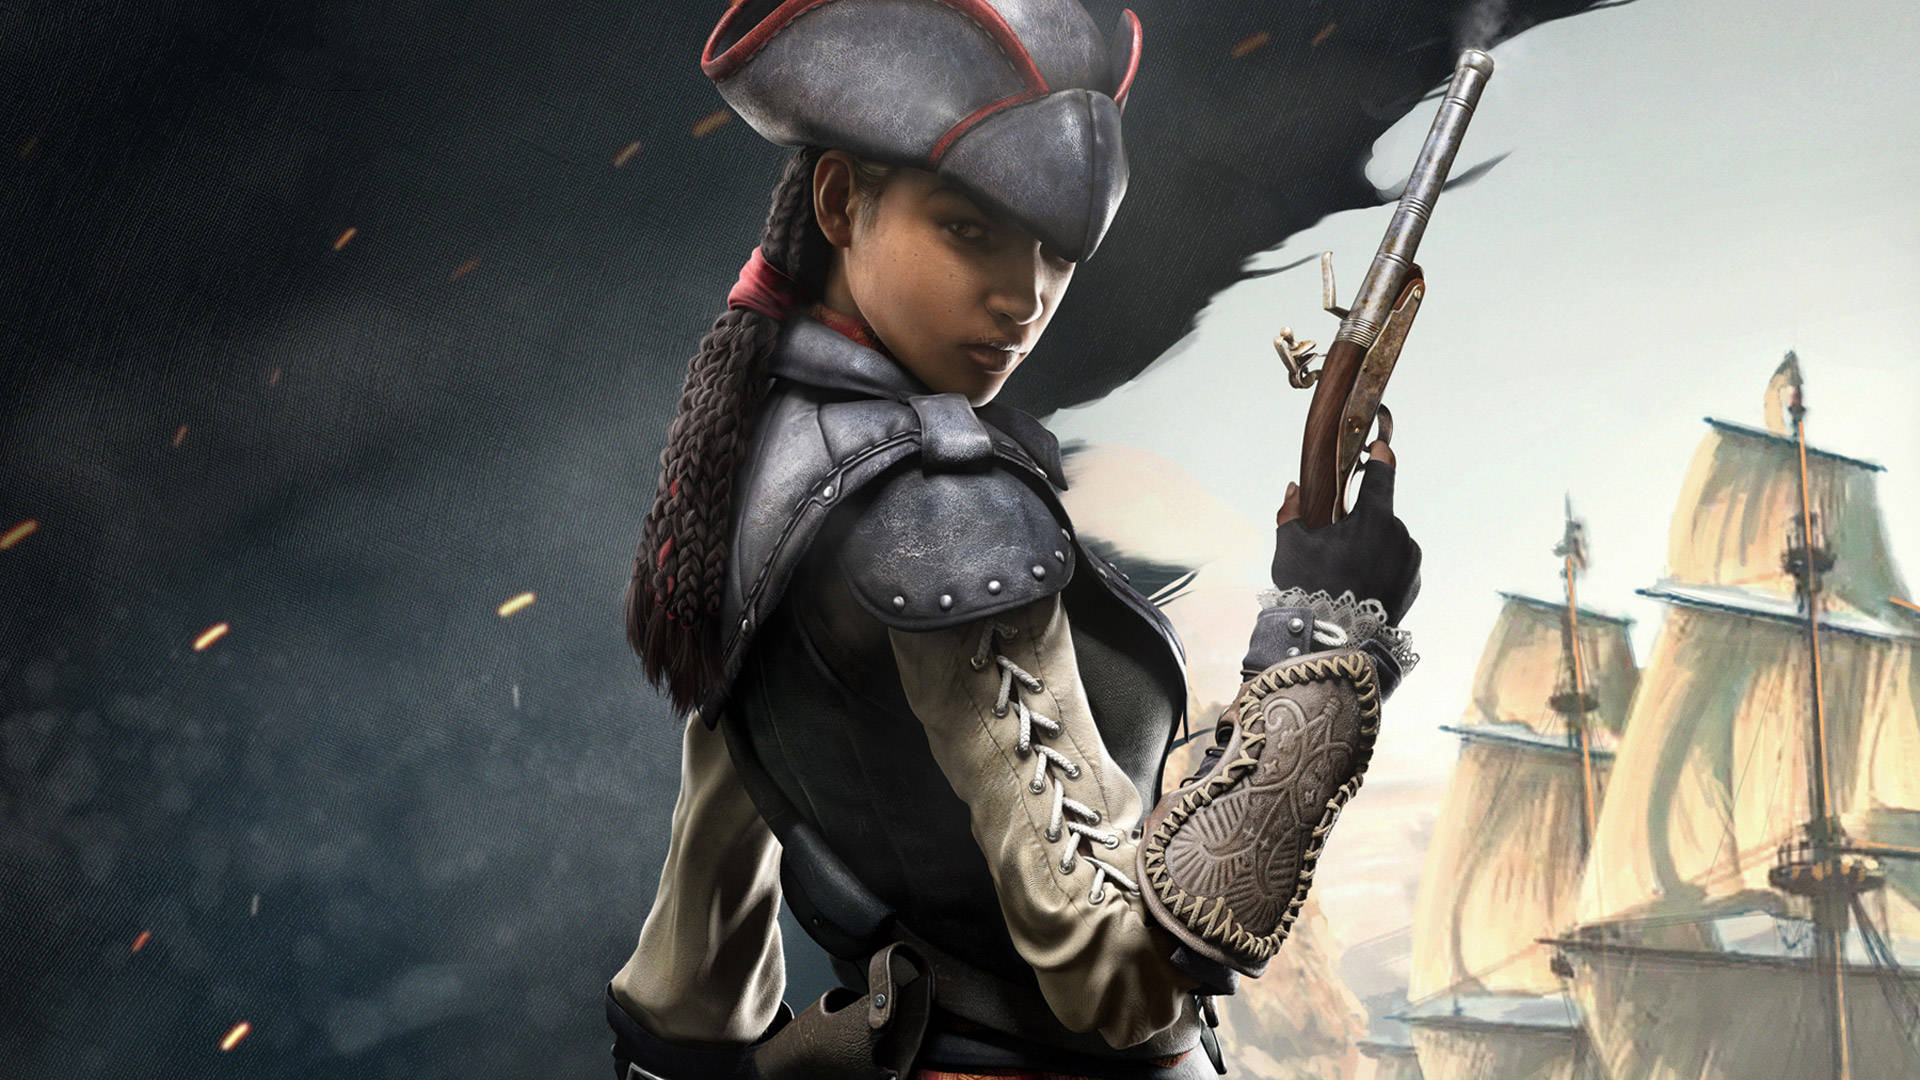 Assassin's Creed Black Flag - Aveline de Grandpre in Action Wallpaper